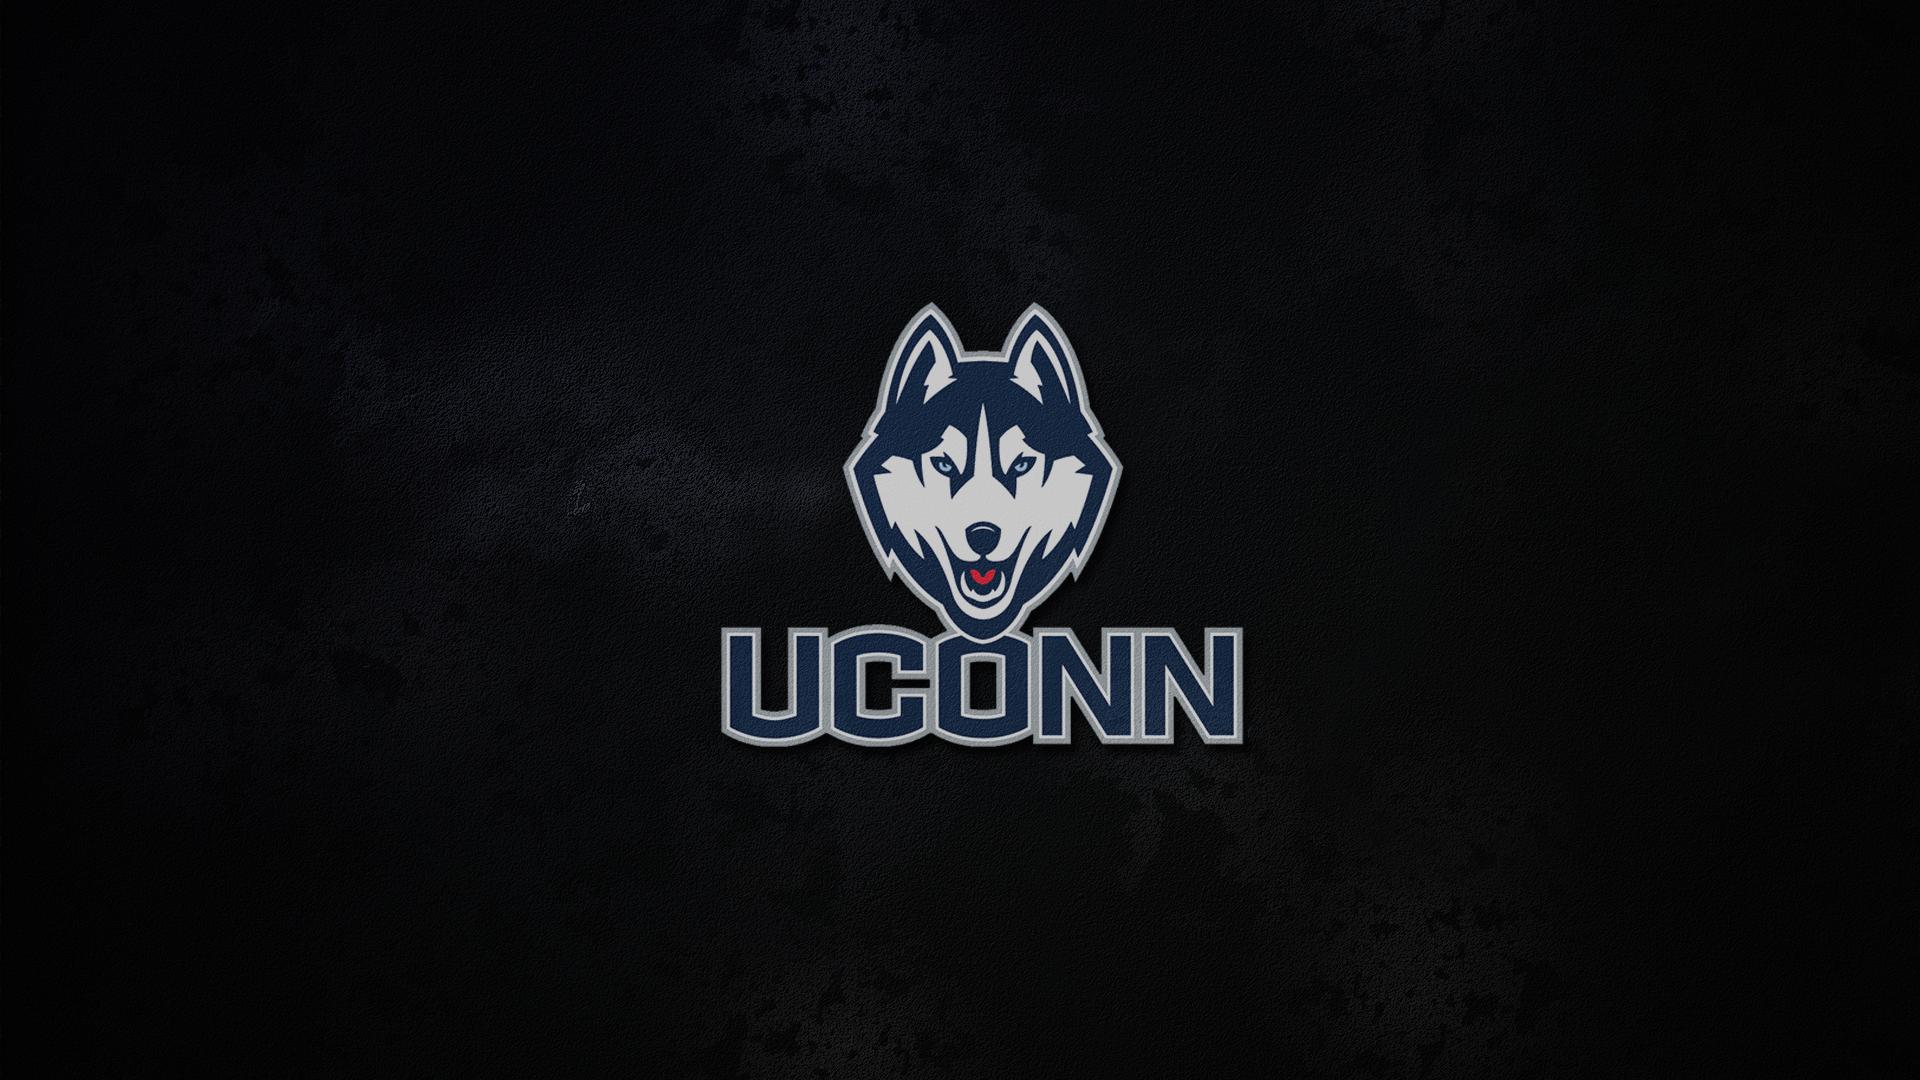 new uconn logo wallpaper